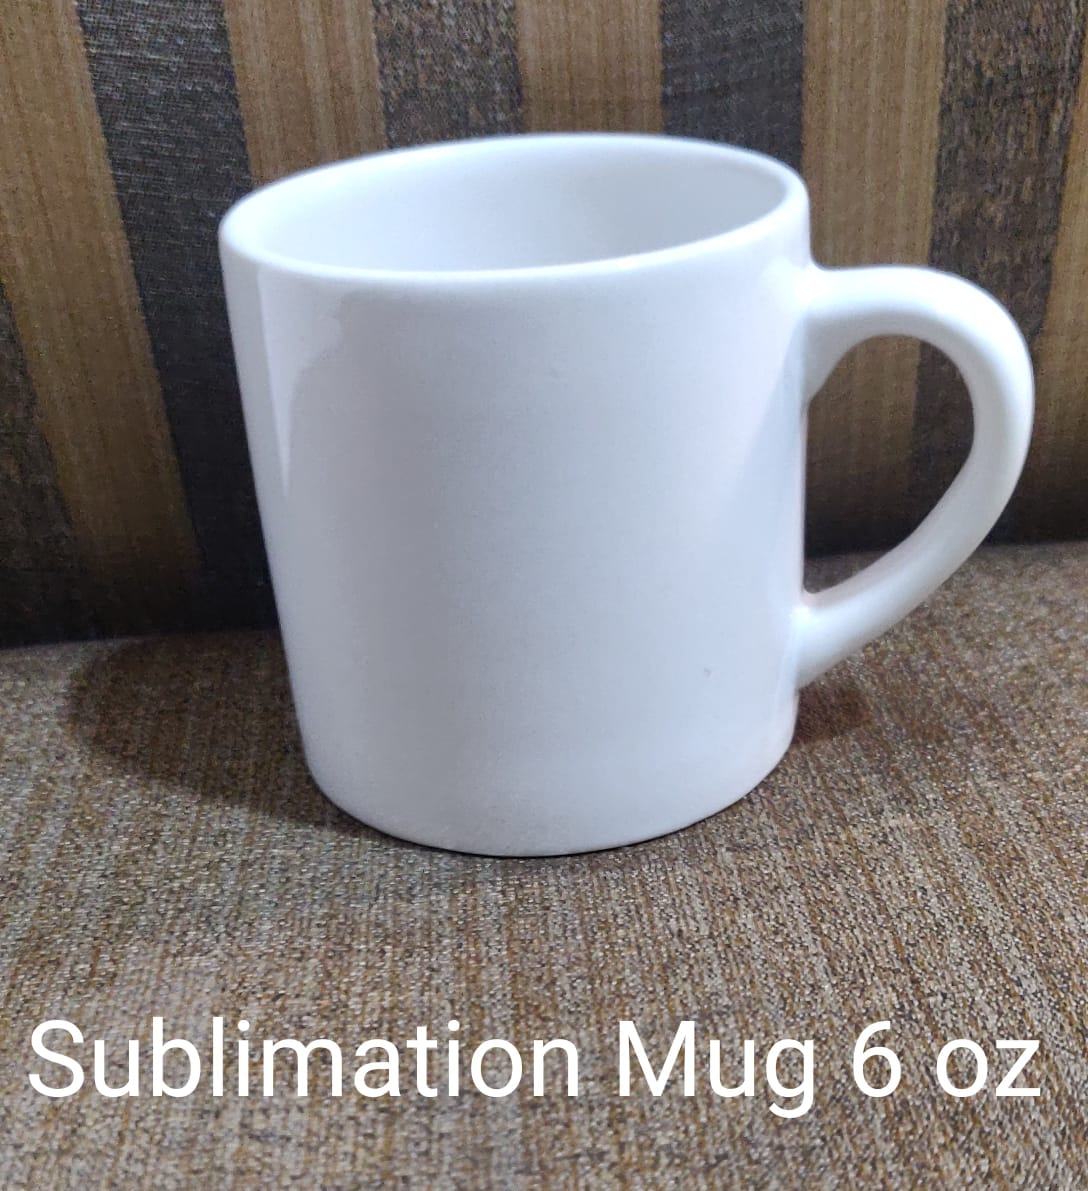 http://kabanicrockery.com/wp-content/uploads/2020/07/6-oz-sublimation-mug.jpg